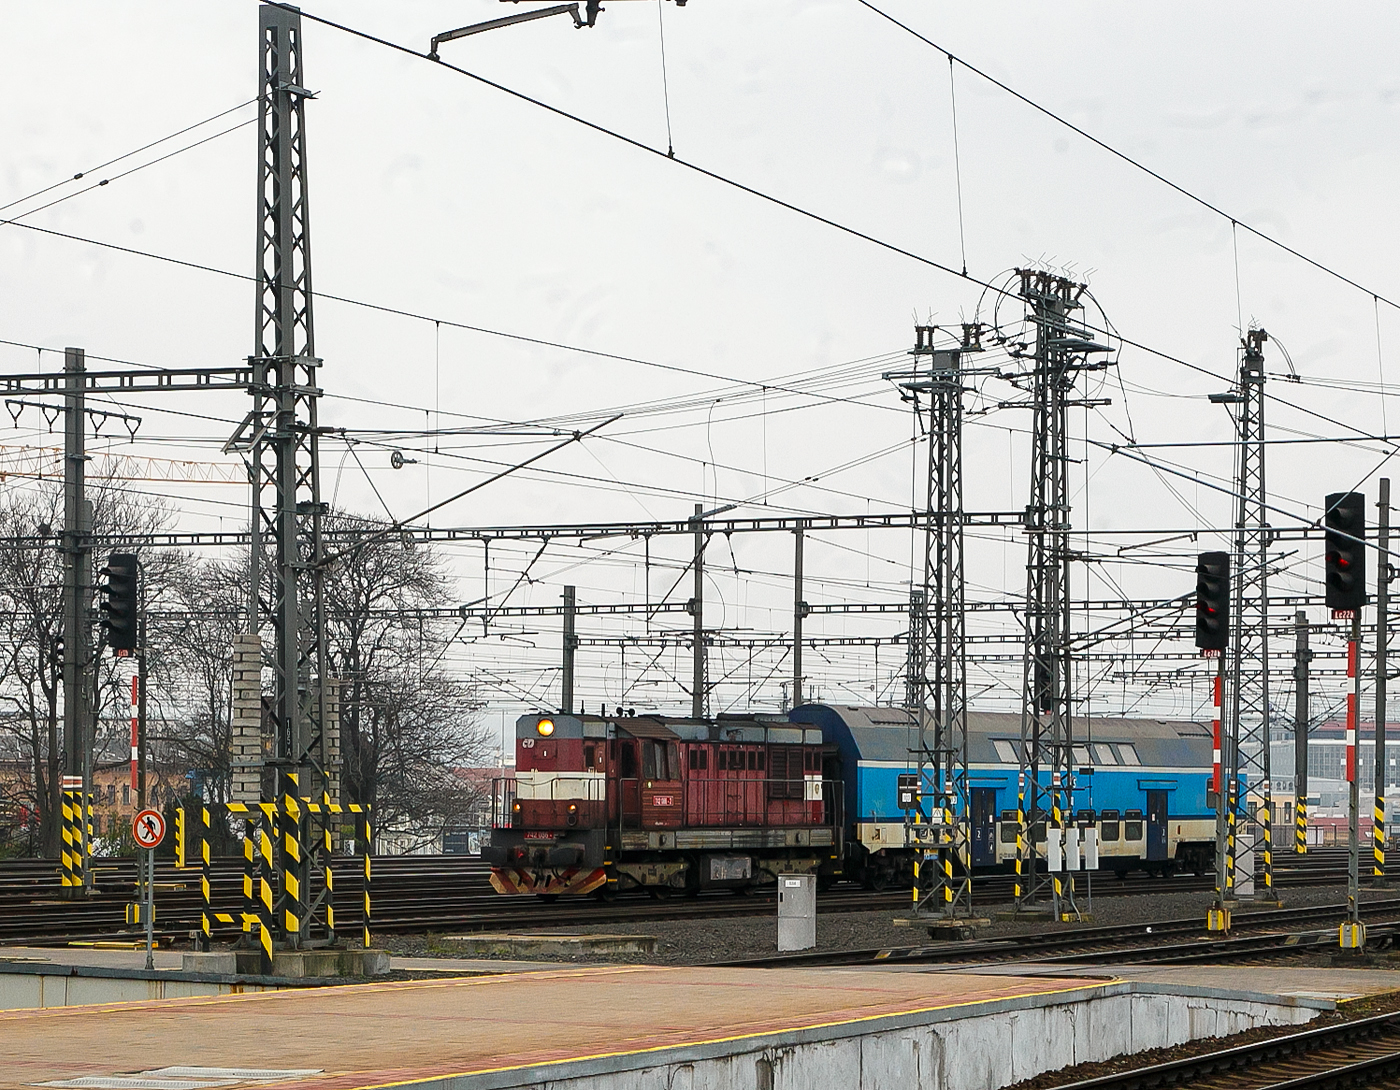 Die ČD 742 086-2 (CZ- ČD 92 54 2 742 086-2) fhrt am 23.11.2022, mit dem  2. Klasse klimatisierten Doppelstock-Reisezugwagen, CD-CZ 50 54 26-18 141-6, der Gattung Bdmteeo 296 (ex CD-CZ 50 54 26-18 141-6, Bmto 292), in den Prager Hauptbahnhof (Praha hlavn ndra) ein. Der 44 t schwere Wagen verfgt ber 126 Sitzpltze, 8 Stellpltze fr Fahrrder und ein geschlossenes WC-System.

Die Diesellok  Kocour   oder  Tranzisto   (Kater, Transistor):
Die ČSD-Baureihe T 466.2, ab 1988 Baureihe 742 sind dieselelektrische Gterzug- und Rangierlokomotiven der ehemaligen Tschechoslowakischen Staatsbahn (ČSD). Die Entwicklung begann 1970 mit den beiden Prototypen der BR T 475.15 (744.5). 

Das Leistungswachstum in der Motortraktion sowie die Notwendigkeit von Fortschritten bei der Erneuerung der Dampftraktion und der knftigen Typenvereinheitlichung des Motorlokparks veranlassten das Verkehrsministerium, die Beauftragung der Entwicklung und anschlieenden Produktion einer neuen Lokomotive zu prfen. Diese sollte fr mittelschweren bis schweren Rangierdienst, leichteren Gleisdienst, aber auch im Gter- und Personenverkehr, bestimmt sein.

Zwei Prototyp-Lokomotiven der Reihe T 475.15 (744.5) wurden 1970 von ČKD in Praha gebaut, wurden aber von der ČSD als ungengend abgelehnt. Dies lag hauptschlich an ihrem Fhrerstand,  whrend die ČSD einen Turmfhrerstand mit guter Sicht verlangte, hatten diese Lokomotiven einen Fhrerstand neben dem hinteren Ende der Lokomotive, sodass die Aussicht nicht sehr zufriedenstellend war. Die Maschinen der Baureihe T 475.15 wurden daher verworfen und stattdessen die neuen Lokomotiven der Baureihe T 466.0 (735) produziert. Die Produktion erfolgte ab 1972 im Turčiansk strojrny in Martin. 1973 begann bei ČKD Prag die Produktion neuer Lokomotiven der Reihe T 448.05 (740.5), die fr den Bedarf groer Industrieunternehmen und fr den Export bestimmt waren. Die Produktion von Lokomotiven T 466.0 (735) bei TS Martin verzgerte sich noch, die Entwicklung von Lokomotiven der Baureihe T 466.1 blieb erfolglos, auerdem war geplant, die Produktion von Lokomotiven bei TS Martin einzustellen und das Werk auf die Waffenproduktion zu konzentrieren . Auch die bereits produzierten T 466.0 (735) Maschinen waren im Betrieb sehr unzuverlssig. Die Situation in der Flotte der ČSD-Motorlokomotiven ist daher unertrglich geworden. Deshalb hat sich die ČSD eine Notlsung einfallen lassen: 1976 bestellten sie bei der ČKD 60 neue Lokomotiven der Baureihe T 466.2 (742), die genau aus den Industriemaschinen der T 448.05 (740.5) entstehen sollten. Die Serie, die bereits seit drei Jahren in der Industrie im Einsatz war, mit zudem sehr guten Ergebnissen. Die Liste der erforderlichen Umbauten war recht lang: Gewichtsreduzierung, Umbau des Triebwerks, Einbau einer Zugsicherung, Umbauten im elektrischen Teil, Umbau der Bremsen.1977-78 wurden 60 Lokomotiven der 1. Serie gebaut geliefert und die neuen Maschinen wurden fast sofort auf CSD in Betrieb genommen. Die 2. Serie folgte sofort und eine weitere danach. Die Produktion der Lokomotiven T 466.2 (742) fr die ČSD endete mit der 9. Serien im Jahr 1986; insgesamt erwarb ČSD 453 dieser Lokomotiven. Whrend der langjhrigen Produktion gab es mehrere partielle 

Modifikationen an der Konstruktion der Maschine – ab der 2. Serie mehrgliedrige Lenkung und Zugkraftwhler, ab der 3. Serie eine Knickbrcke seitlich am krzeren Vorbau, ab der 6. Serie wurden Jalousien auf dem Dach der Lokomotive installiert und ab der 7. Serie neue Fahrmotoren. 41 Lokomotiven wurden fr den Bedarf der Industrie geliefert, Maschinen auf Basis der Baureihe T 466.0 ČSD wurden auch nach Vietnam und Bangladesch geliefert. Nach der Produktion von Lokomotiven T 466.2 (742) fr ČSD erfolgte 1987-88 die Produktion von abgeleiteten Lokomotiven T 466.3 (743) fr Adhsionsbetrieb auf Steilstrecken.

TECHNISCHE DATEN der BR 742, ex T 466.2:
Hersteller: ČKD Praha
Baujahre: 1977 bis 1986
Hergestellt e Anzahl: 453 fr die ČSD (in 9 Serien), 41 weiter fr andere
Spurweite: 1.435 mm (Normalspur)
Achsfolge: Bo'Bo'
Lnge ber Puffer: 13.580 mm ( am 4. Serie13.600 mm)
Hhe: 4.472 mm
Breite: 3 130 mm
Drehzapfenabstand: 6.700 mm
Achsabstand im Drehgestell: 2.400 mm
Treibrad-: 1.000 mm (neu) / 920 mm (abgenutzt) 
Dieselmotor: 6-Zylinder-Viertakt-Reihen- Dieselmotor mit Direkt-Einspritzung und Turbolader vom Typ ČKD  K 6 S 230 DR
Motorhubraum: 64,75 Liter (Zylinder- 230 mm / Kolbenhub 260 mm)
Kompressionsverhltnis: 12,5 : 1
Nenndrehzahl: 1.250 U/min (Leerlaufdrehzahl 510 U/min)
Motorgewicht (ohne Generator): 7.700 kg
Achsbersetzung: 1:4,8125
Dauermotorleistung: 883 kW (1.200 PS)
Leistung des Traktionsgenerators: 780 kVA
Leistungsbertragung: dieselelektrisch
Fahrmotorentyp: TE 005 E / ab 7. Serie TE 015 C
Antriebsmotorleistung: 195 kVA
Hchstgeschwindigkeit: 90 km/h
Dienstgewicht: 64 t
Anfahrzugkraft: 192kN
Dauerzugkraft: 121 kN
Max. Tankinhalt: 4.000 l
Kleinster bef. Halbmesser: R 80 m

Quellen: Wikipedia, atlaslokomotiv.net
